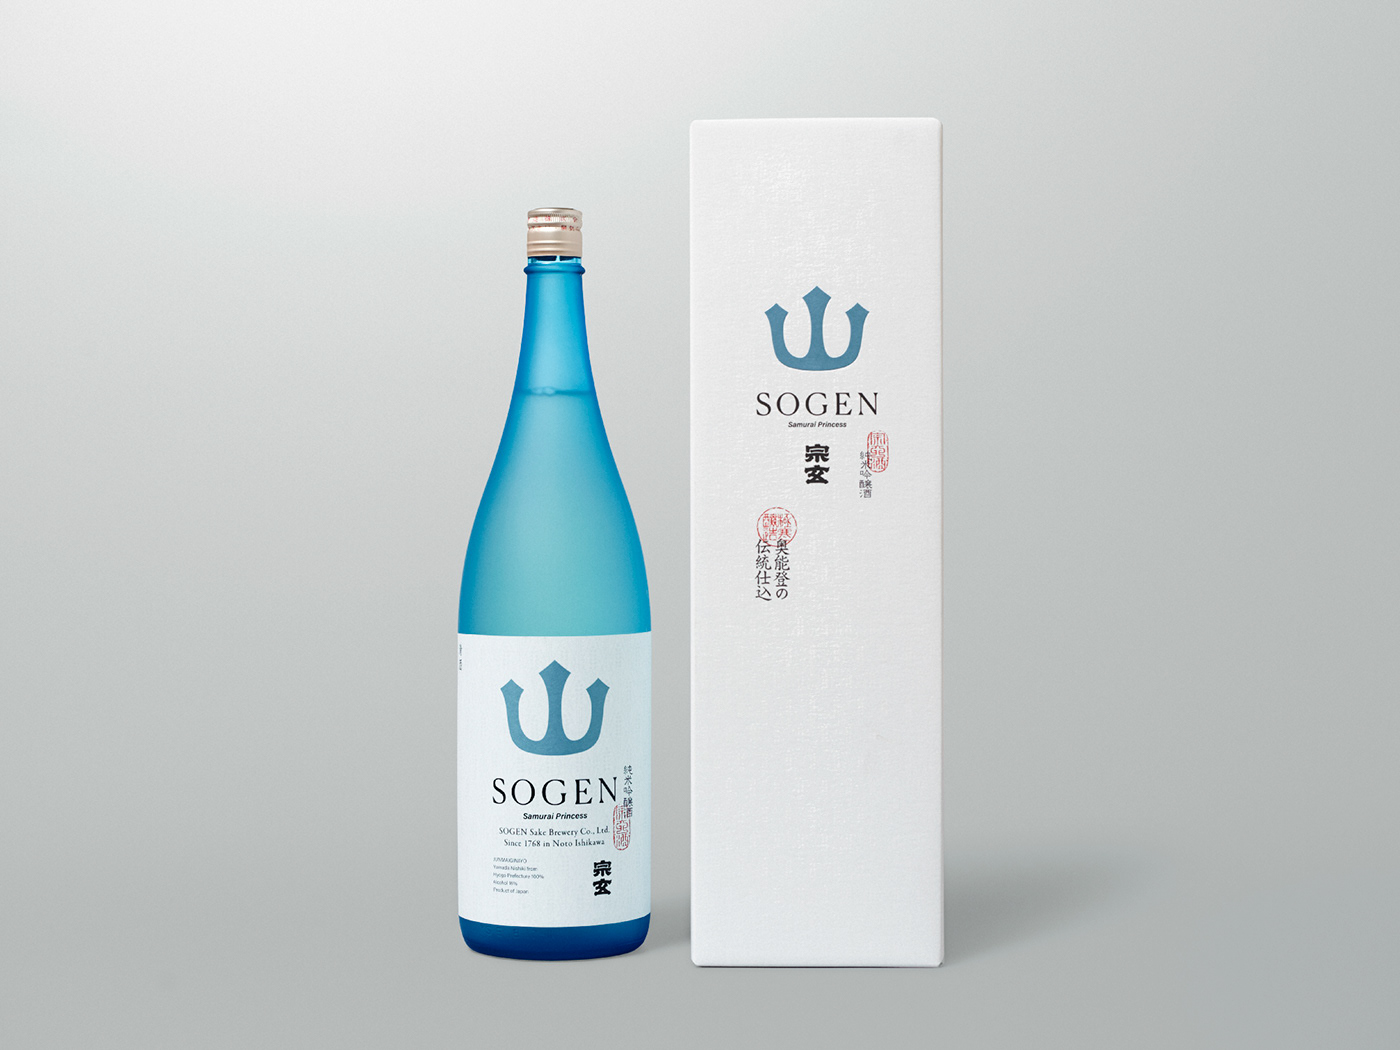 japanese sake Sake Packaging Label foil Bkacj and White minimal simple japan